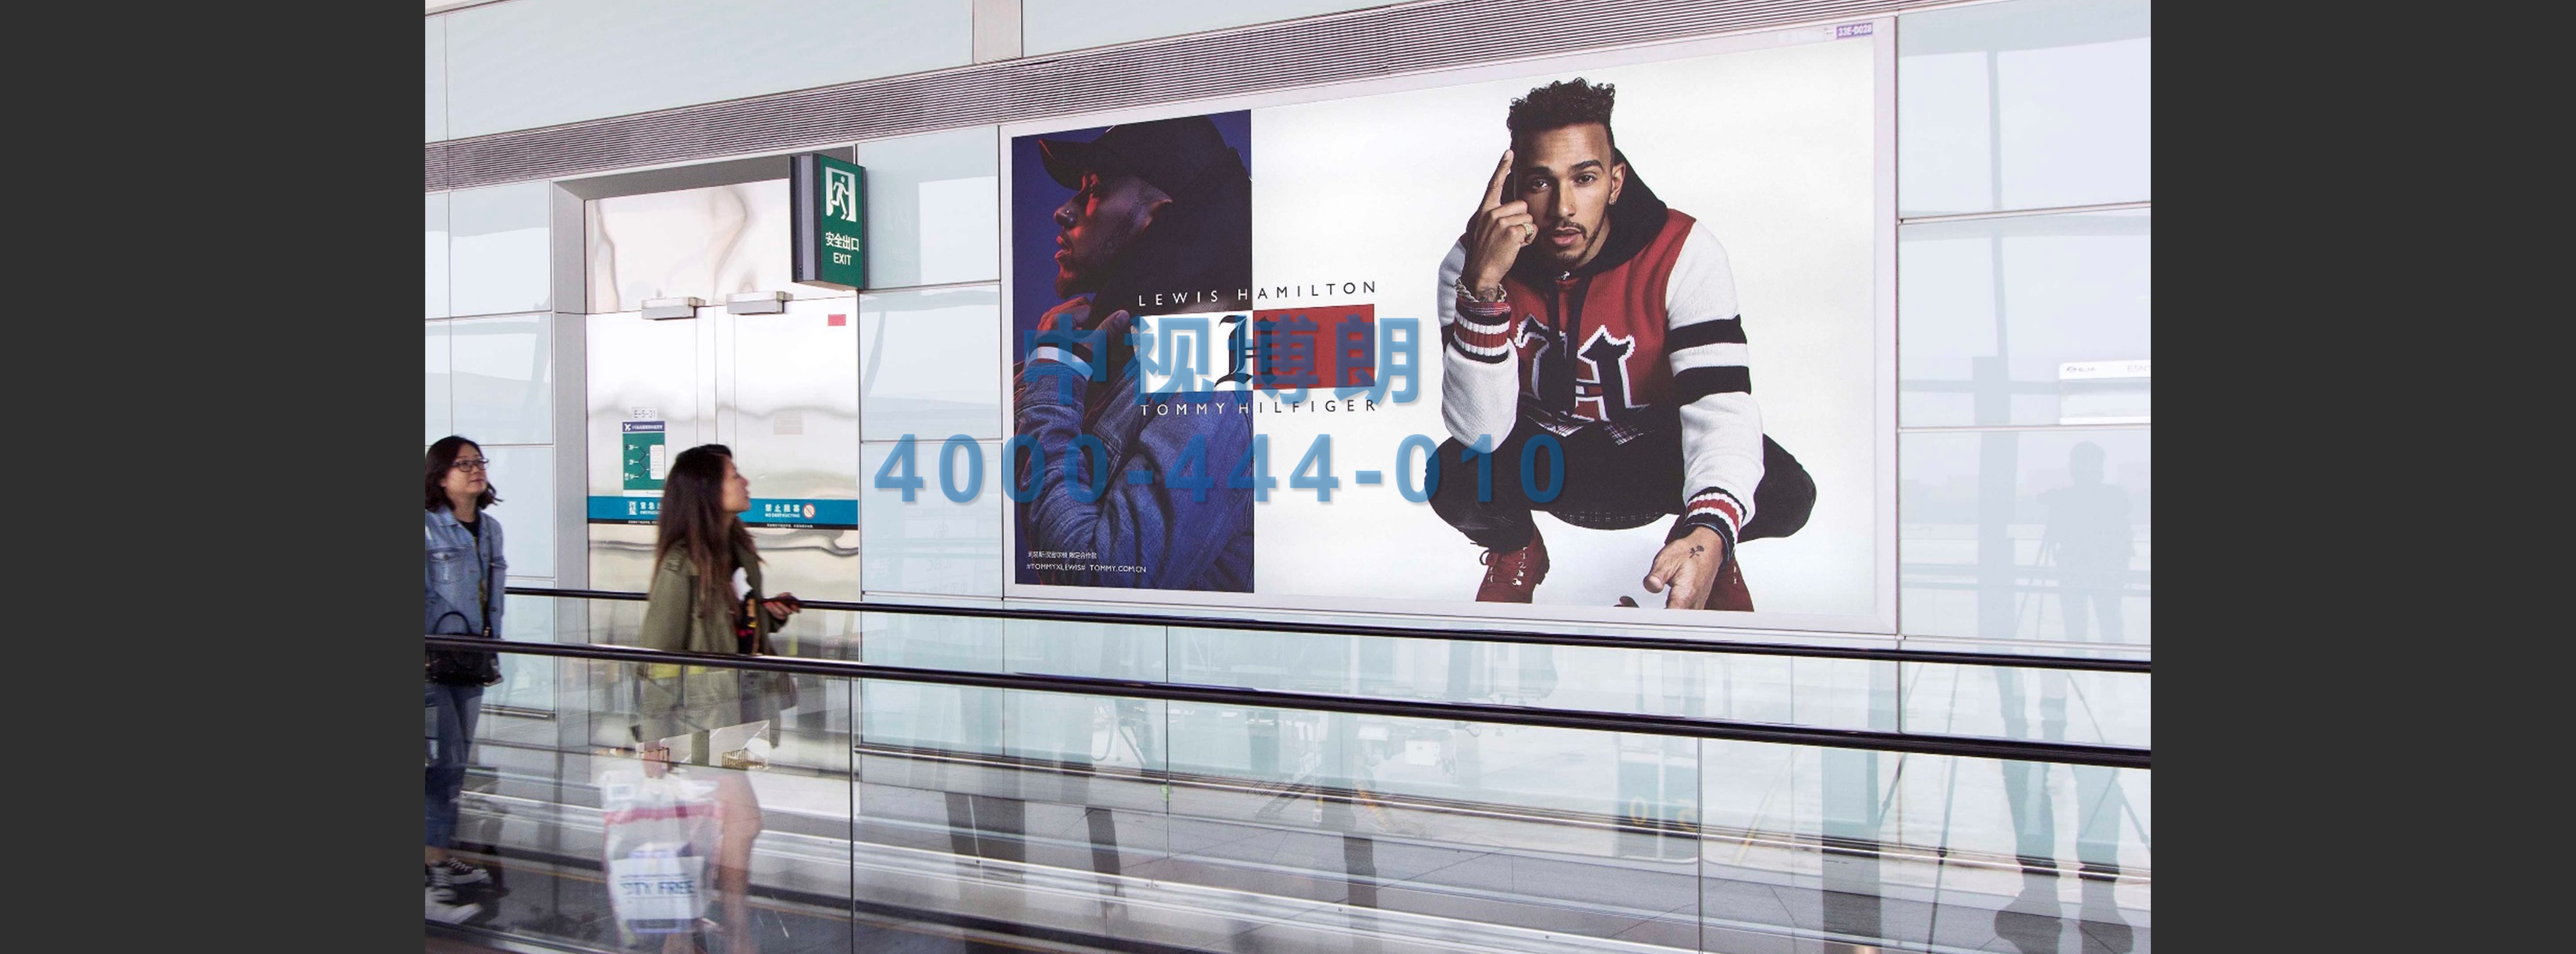 北京首都机场广告-T3国际到达走廊12块联排灯箱2